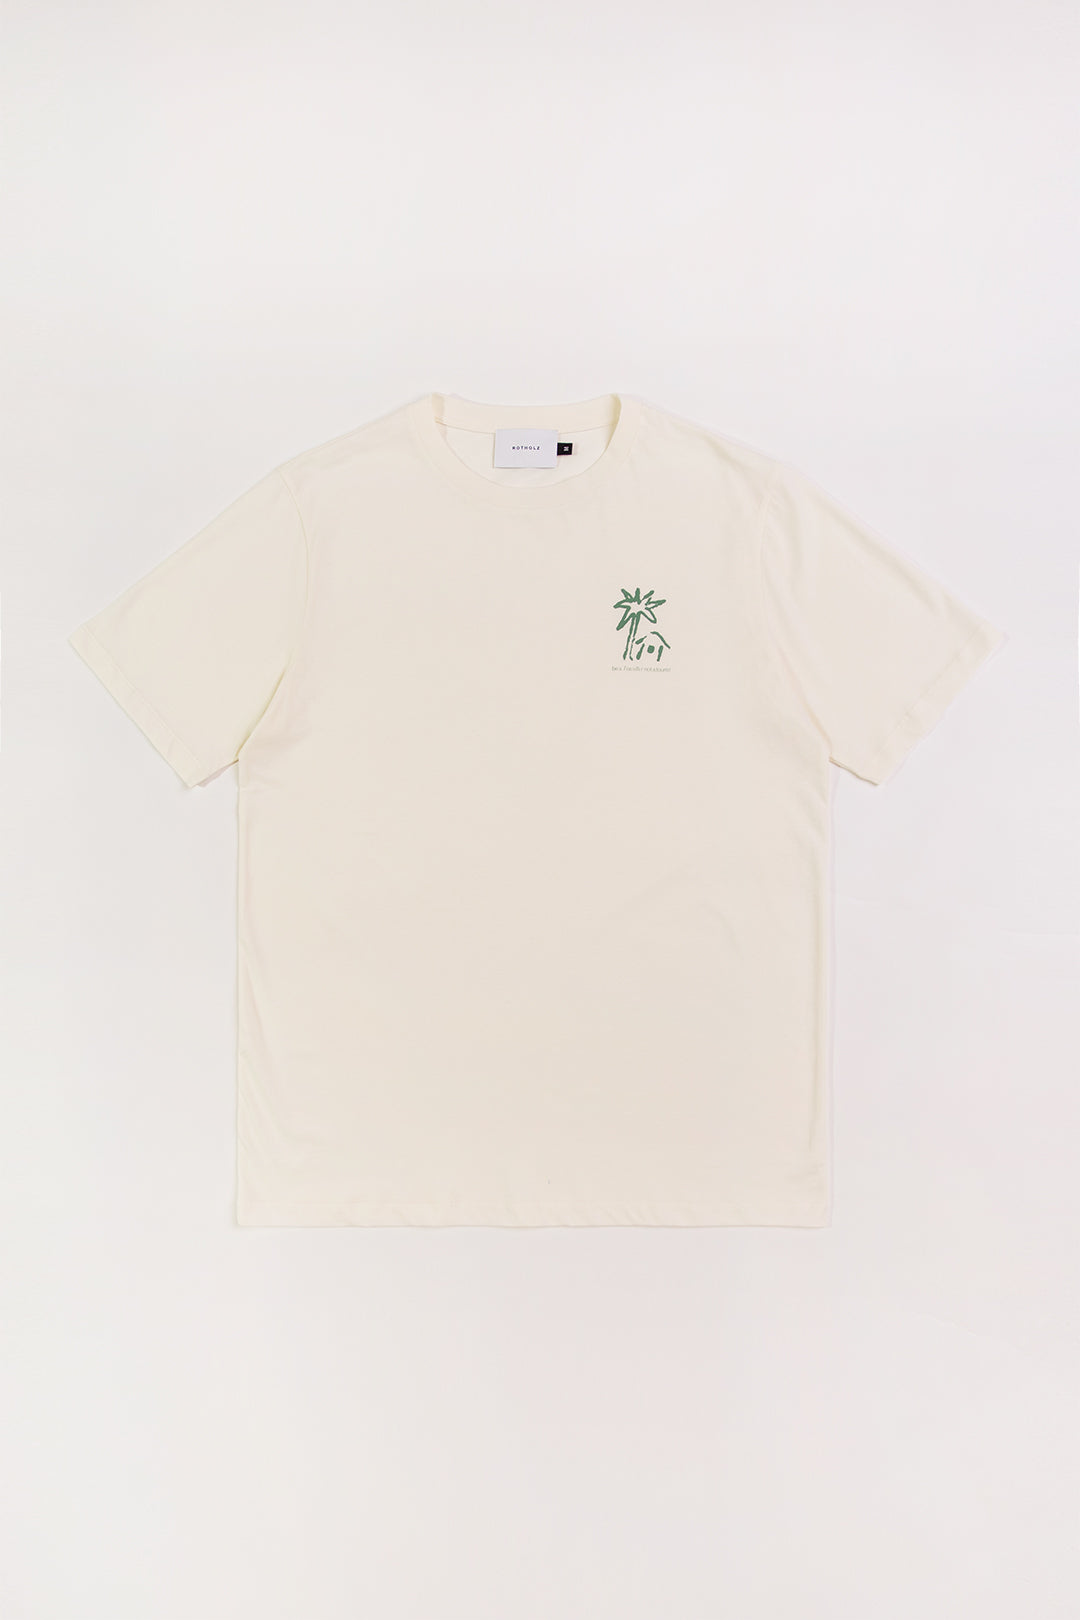 Weisses T-Shirt Beachside aus 100% Bio-Baumwolle